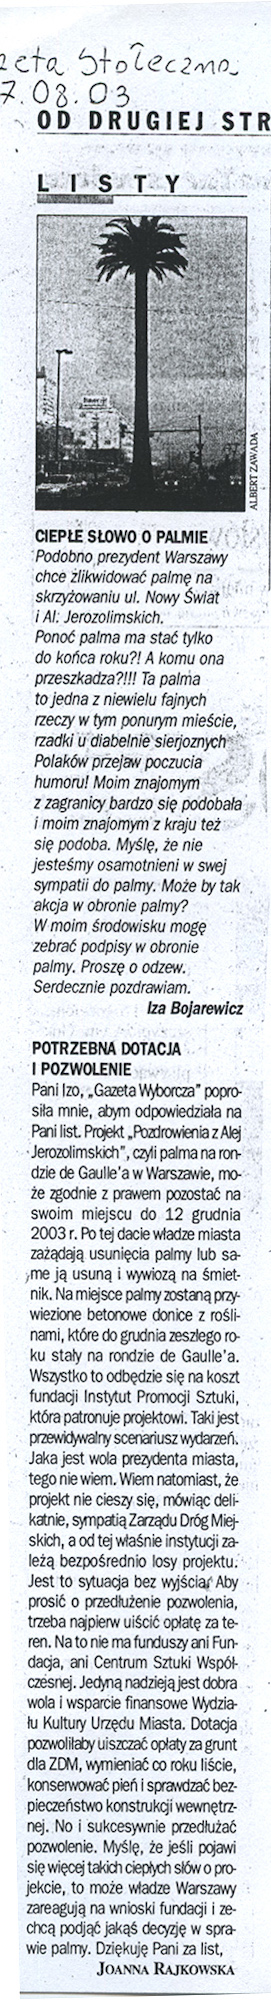 Listy, „Gazeta Wyborcza”, 07.08.2003. 